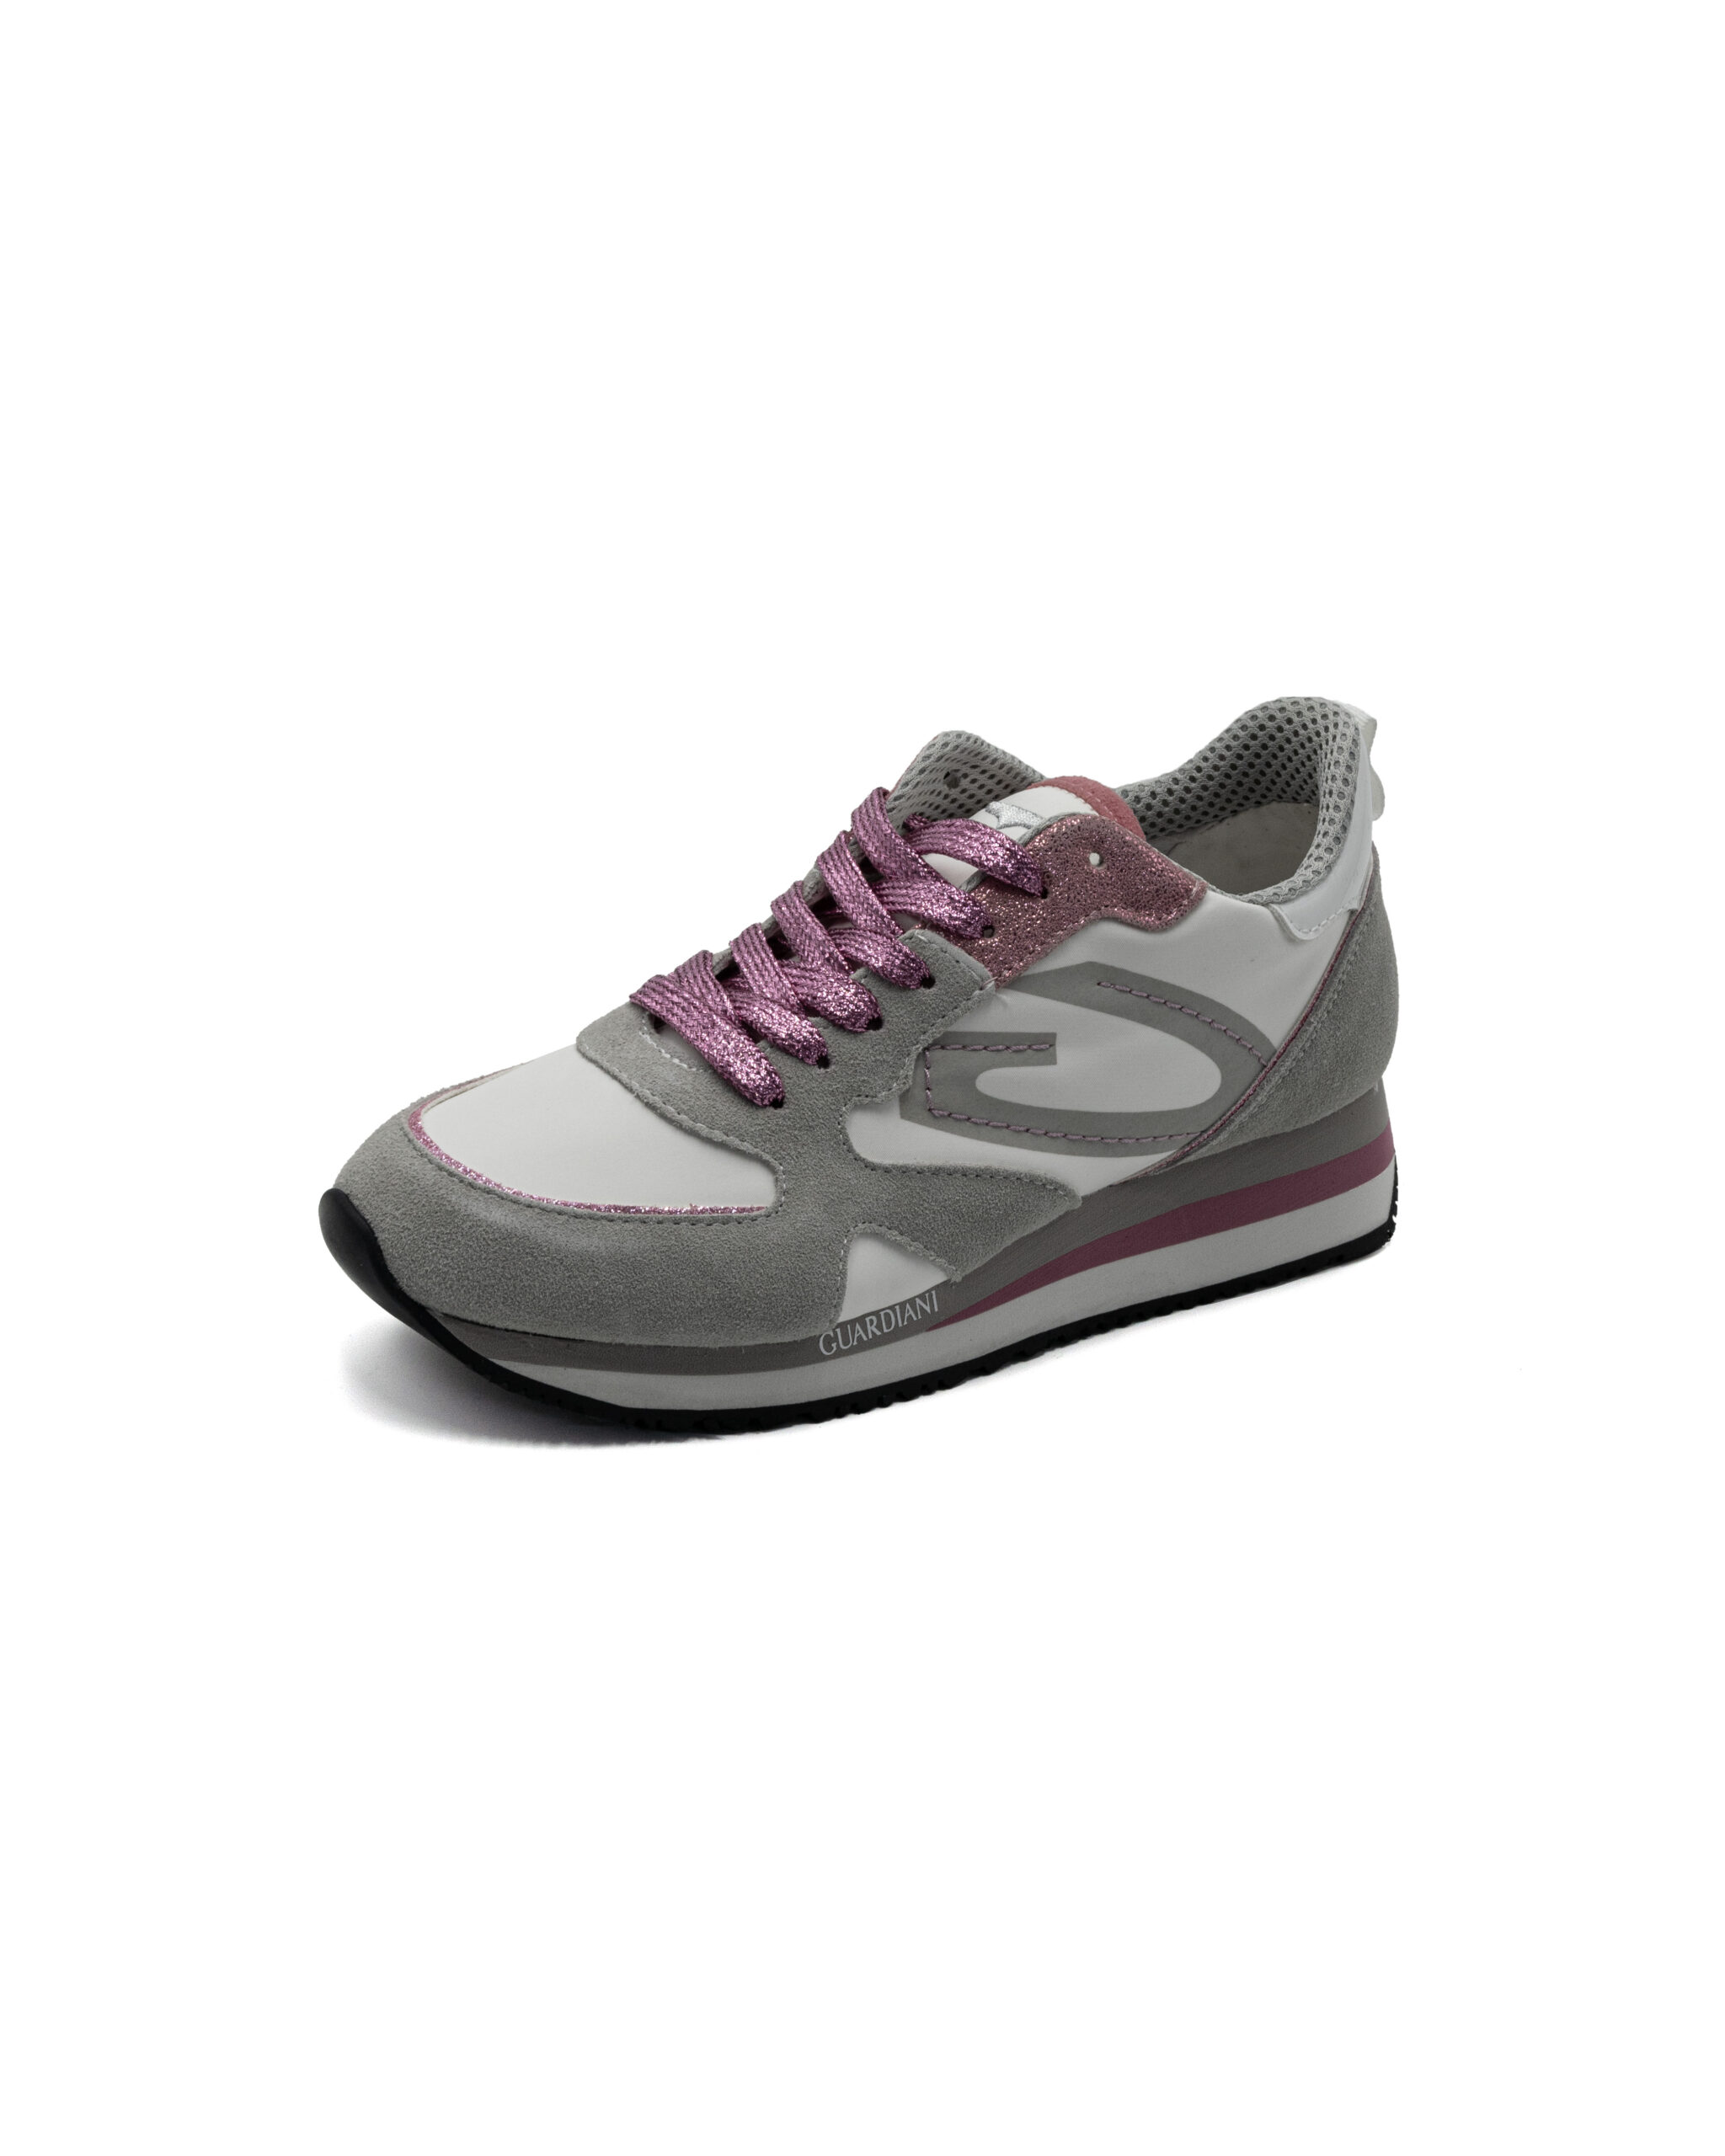 (image for) AGW300007-Sneakers Guardiani Wen con inserti in camoscio e lacci glitterati fluo